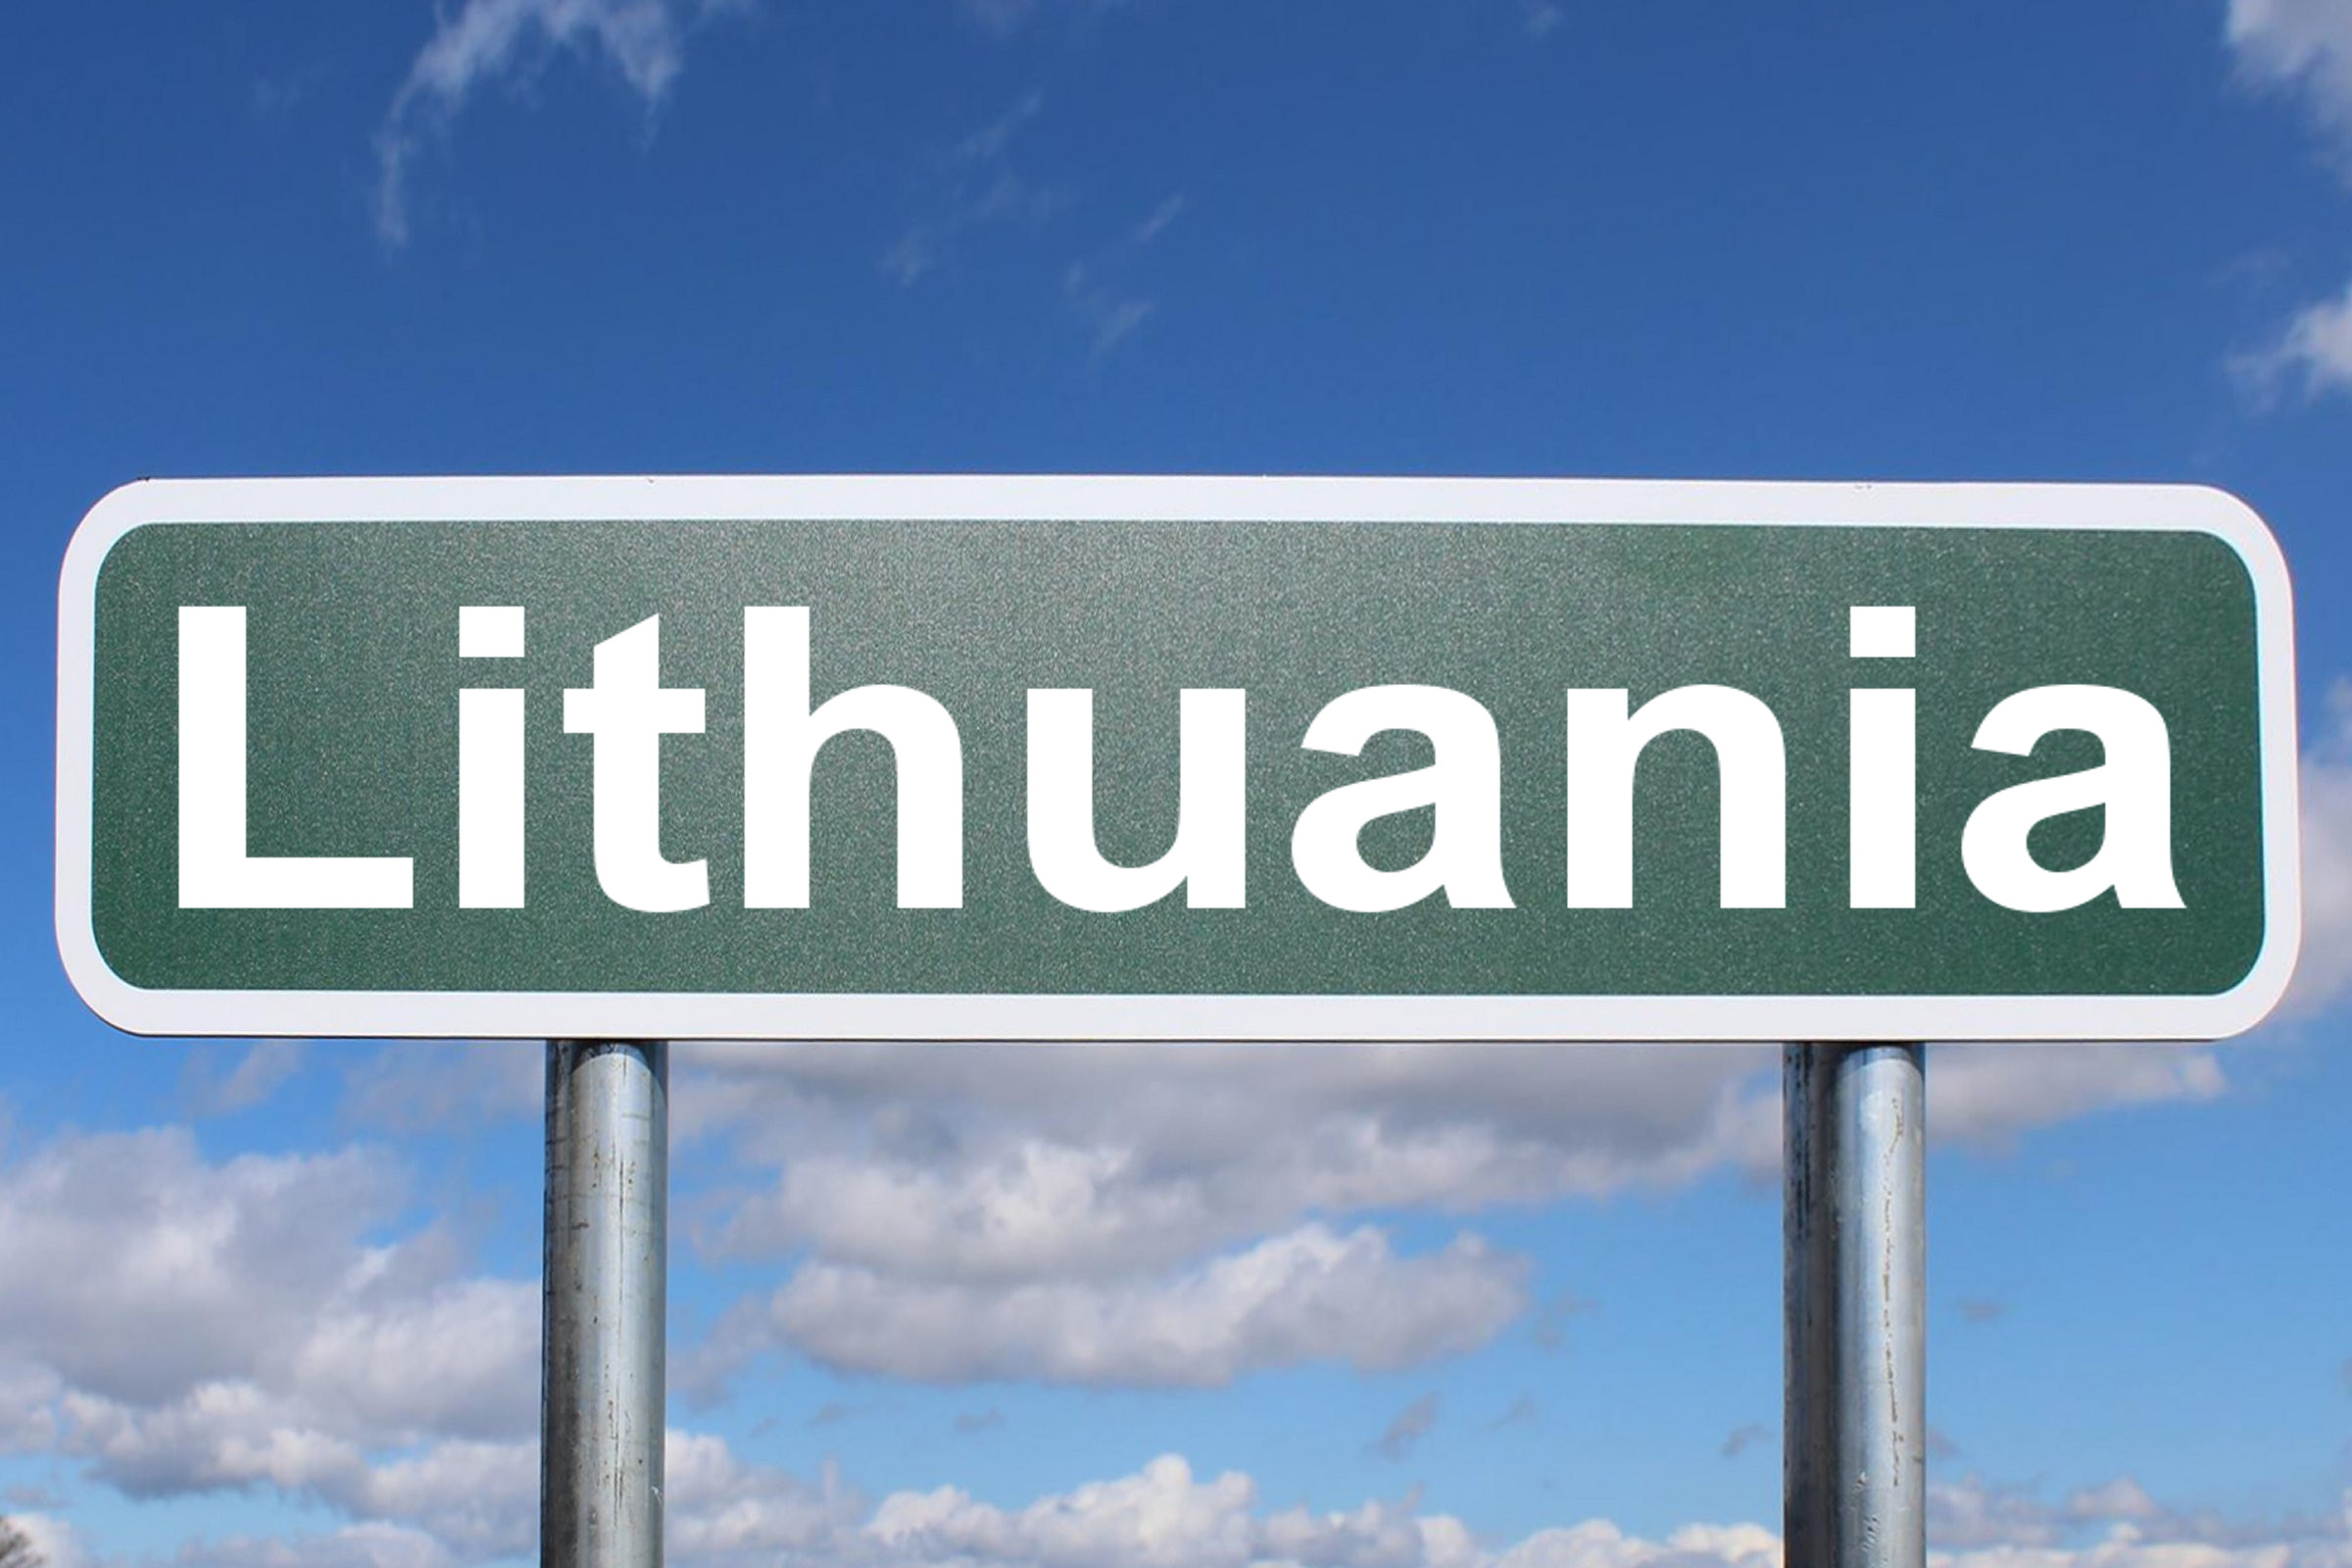 Λιθουανία: Το Ανώτατο Δικαστήριο έκρινε αντισυνταγματικό νόμο για την κράτηση μεταναστών